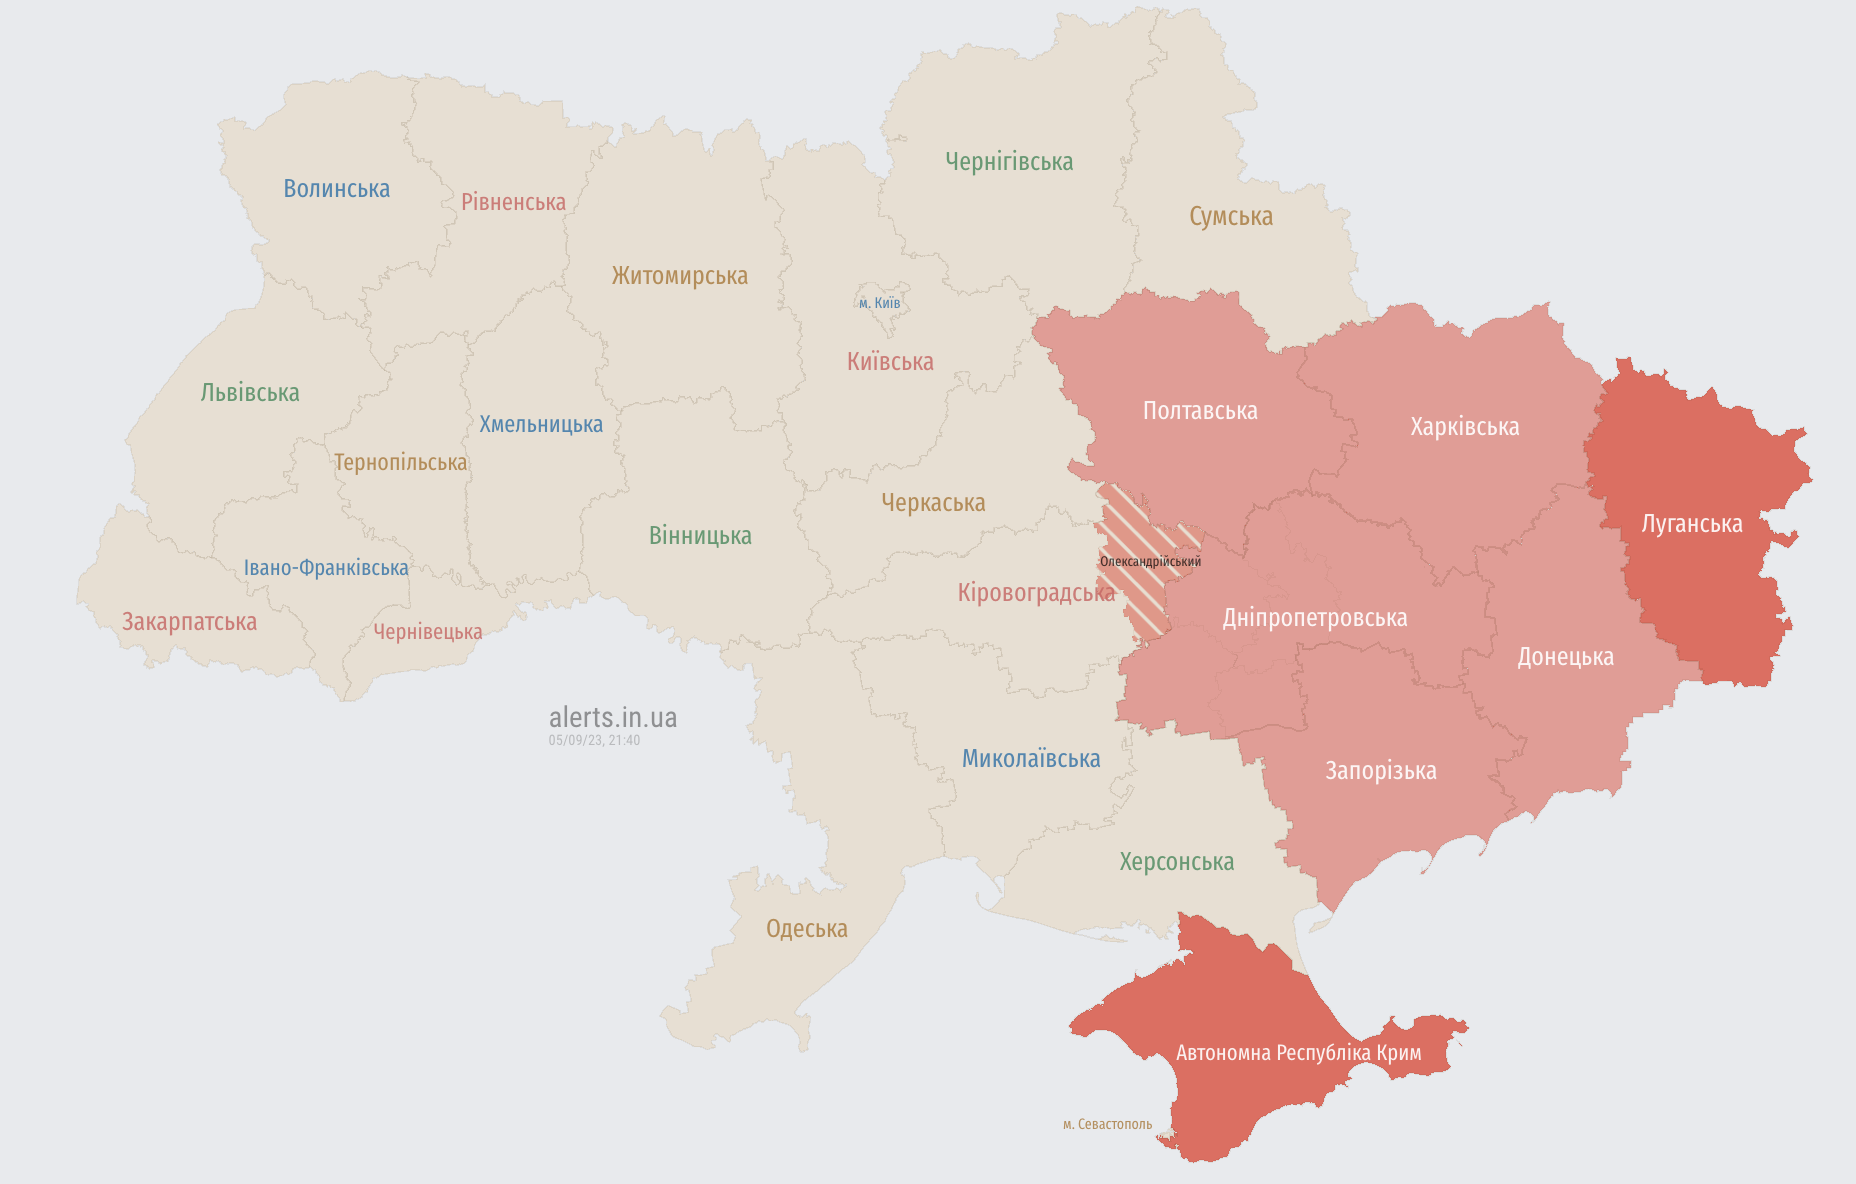 Повітряна тривога у низці областей України: де є загроза балістики